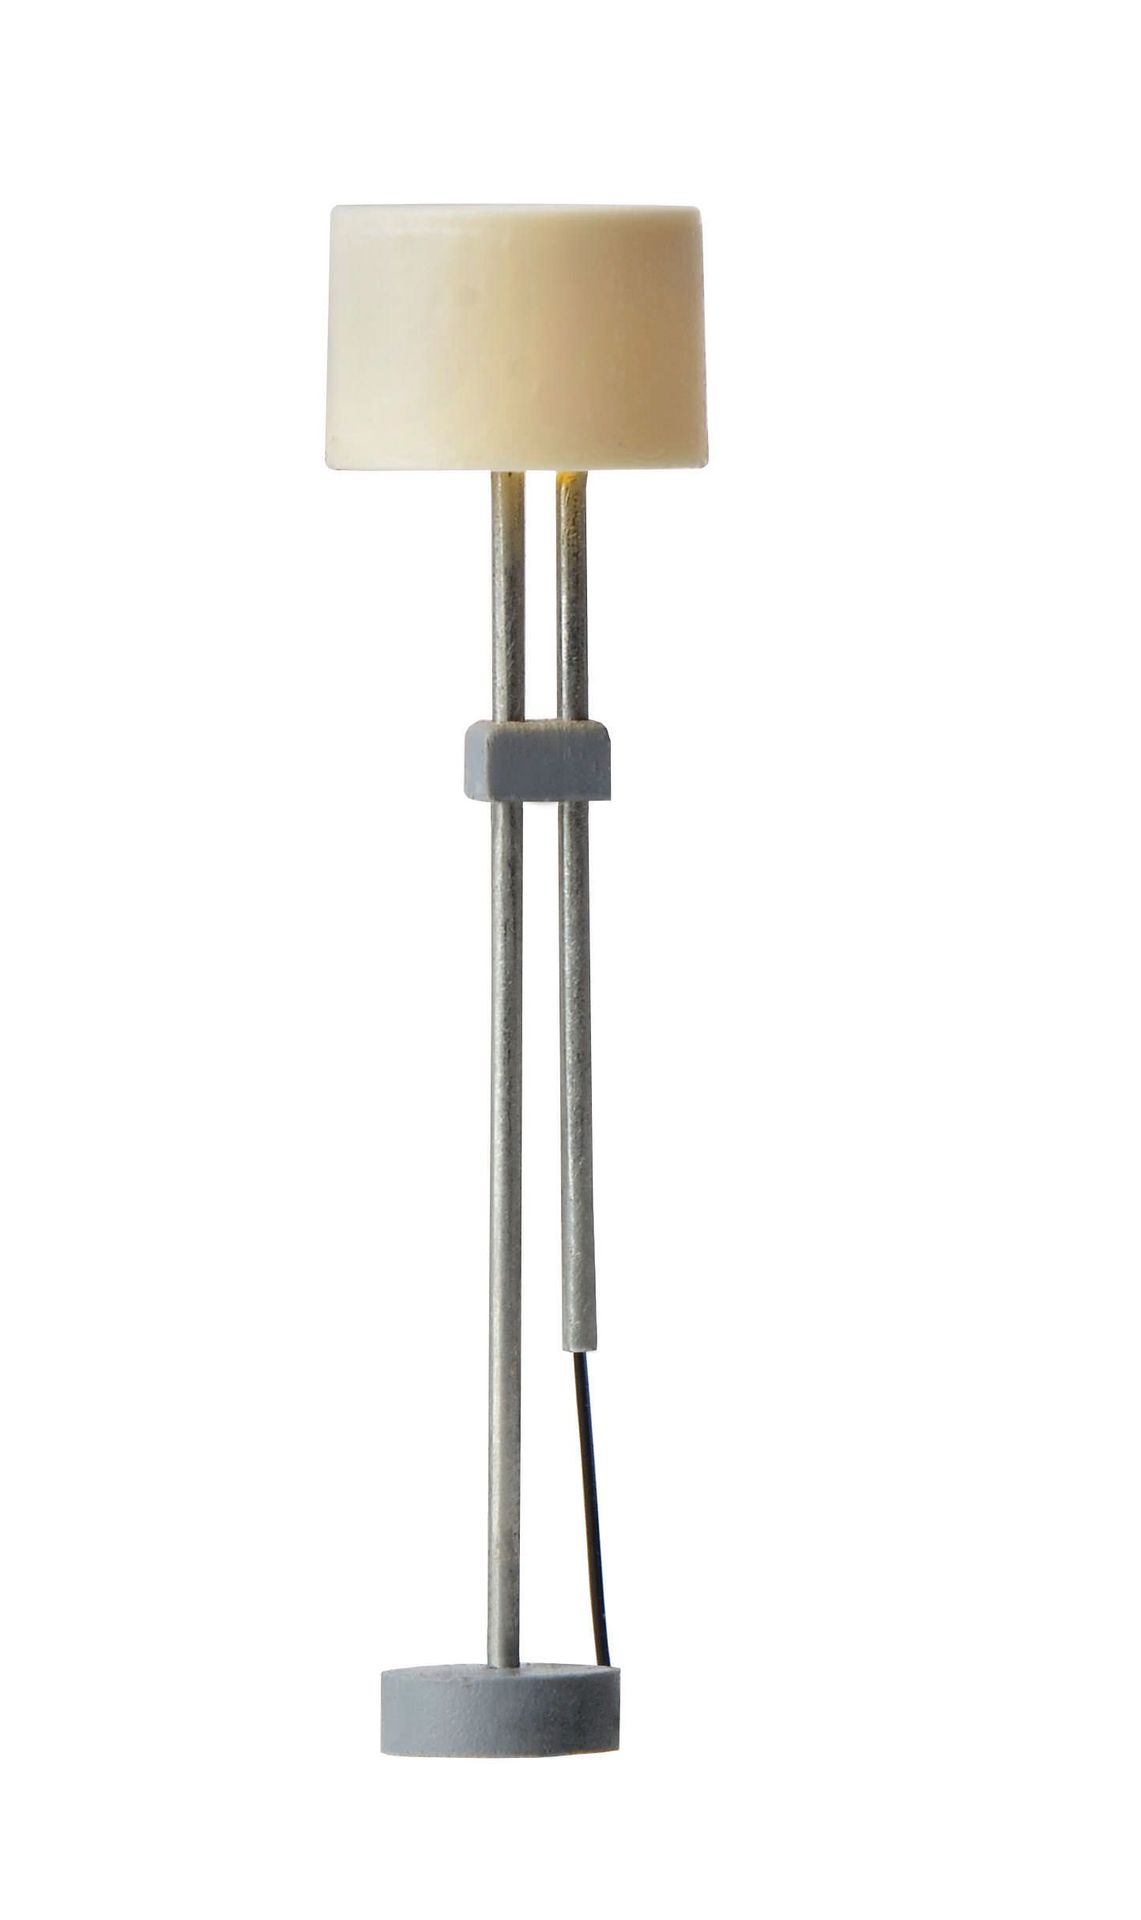 Viessmann 6172 - Stehlampe, LED warmweiß H0 1:87